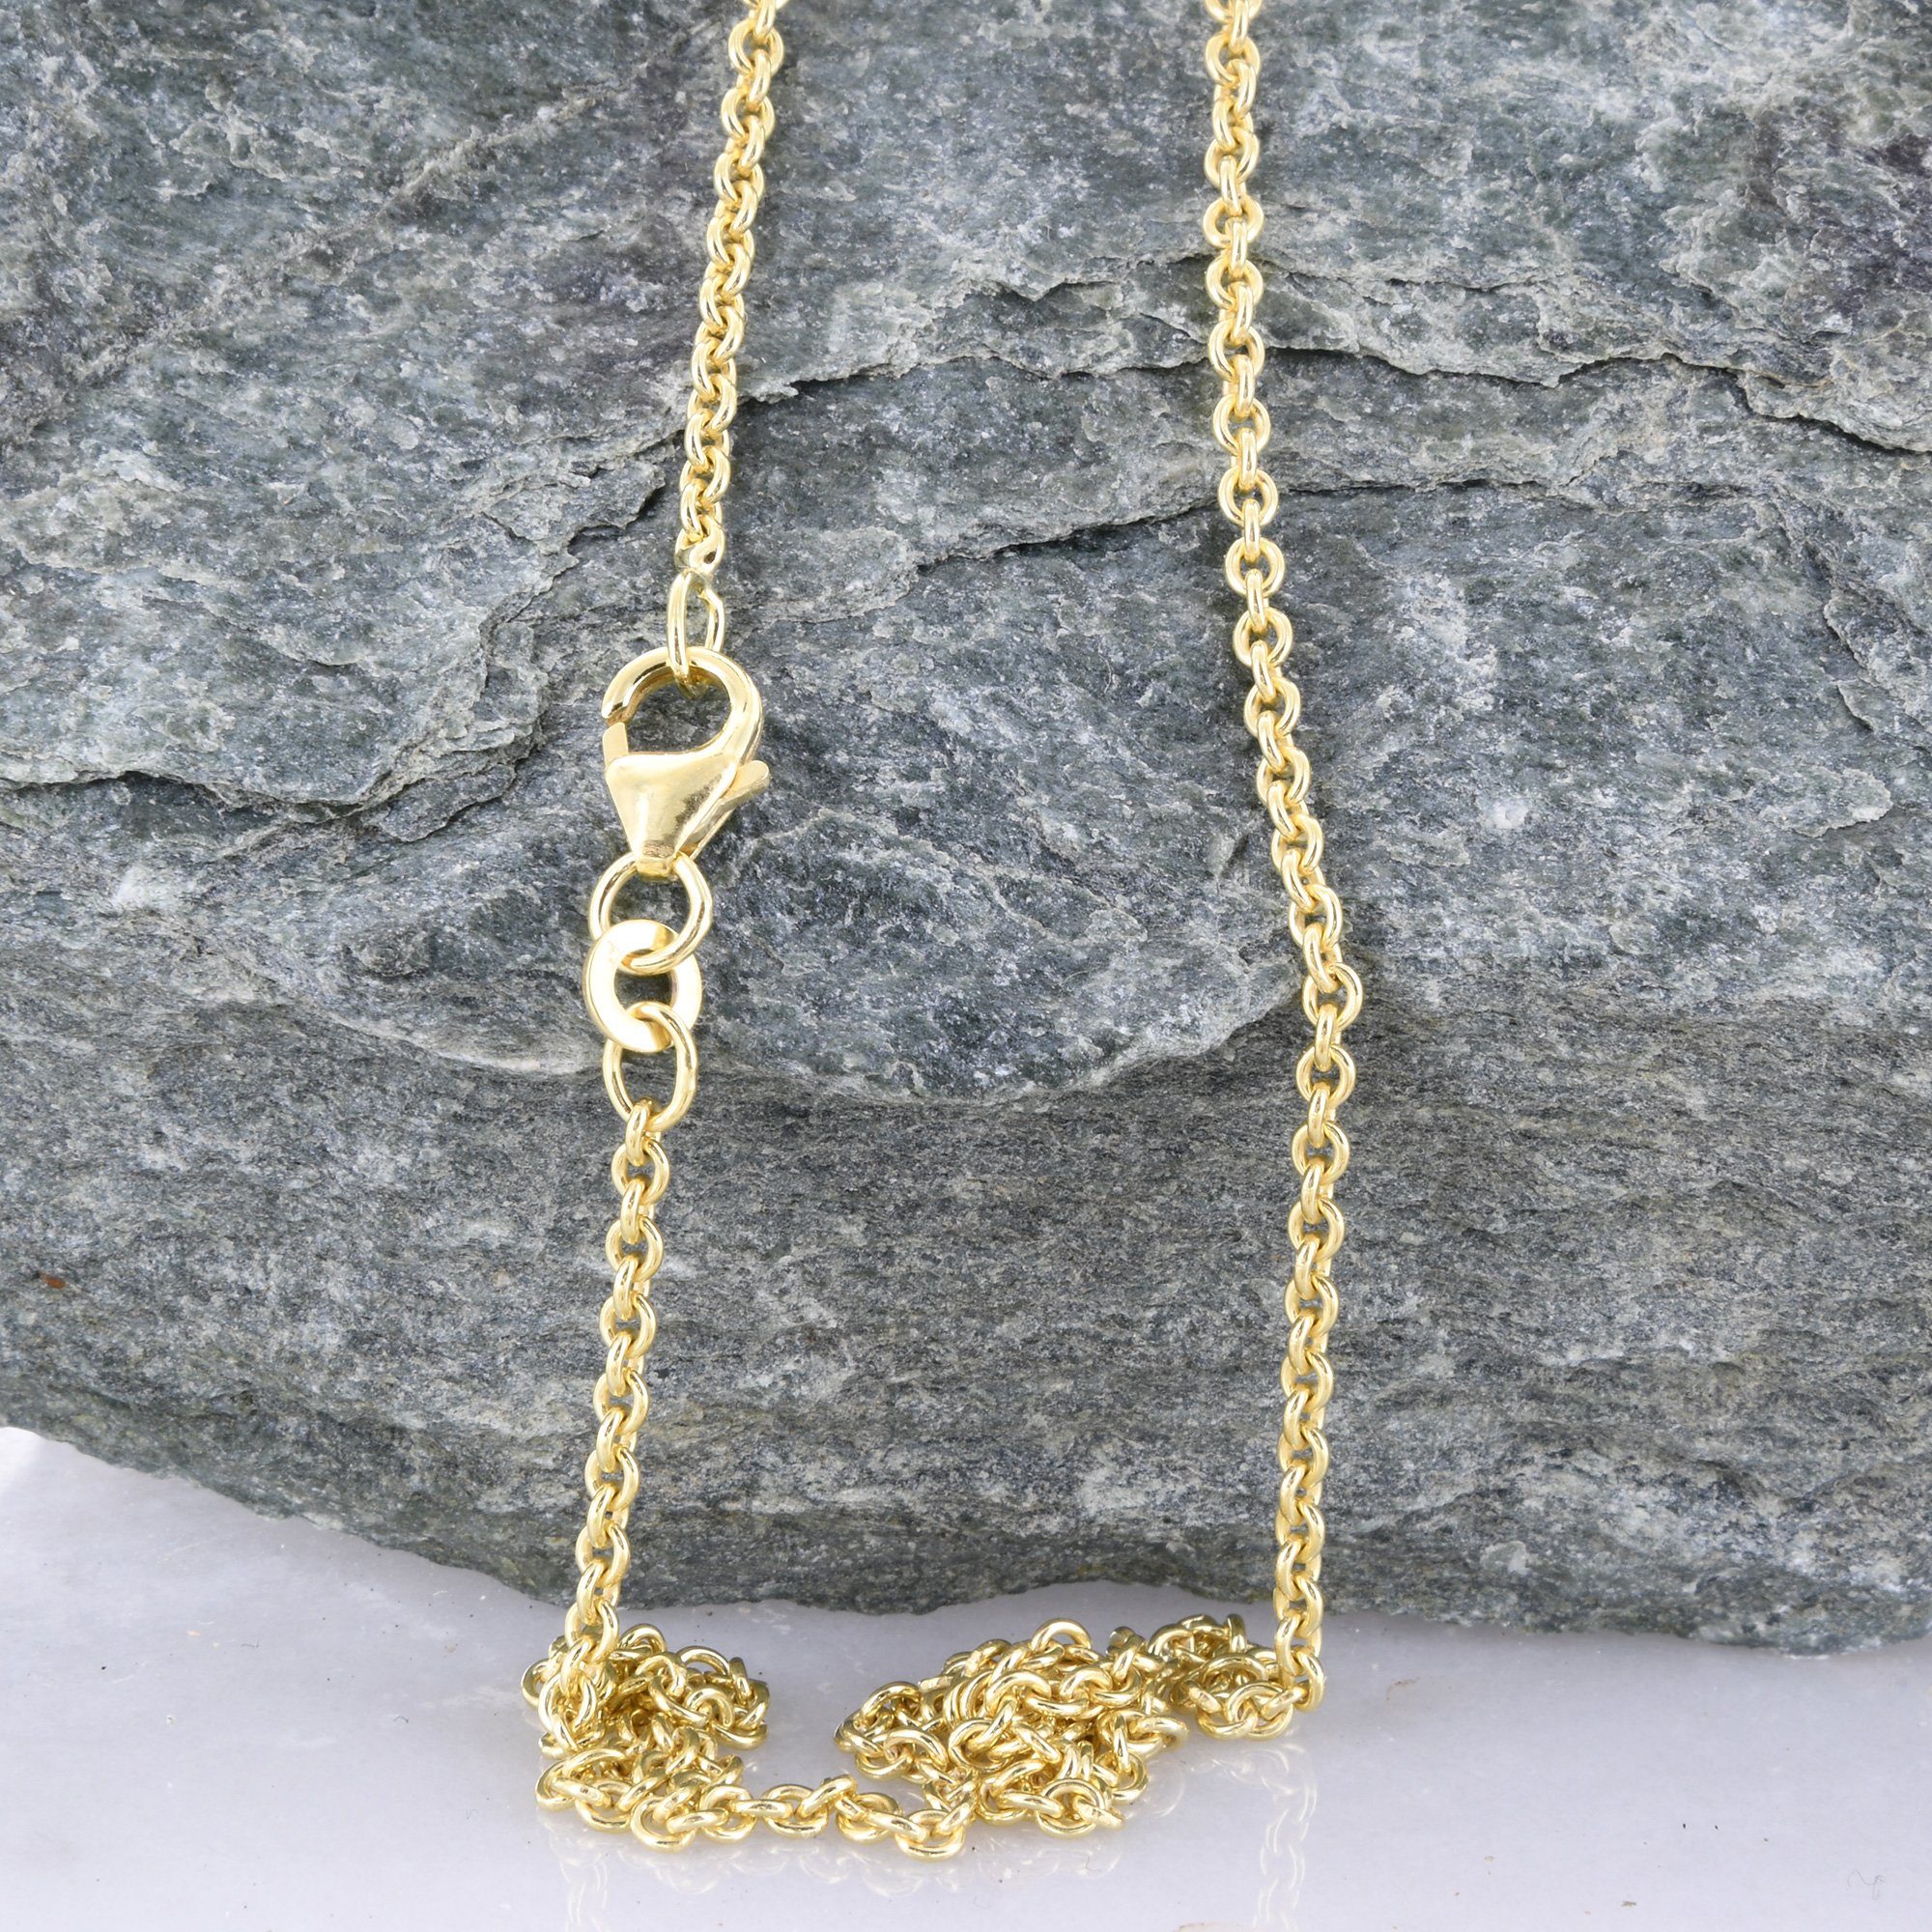 Herren Schmuck HOPLO Goldkette 2,0 mm 45 cm 333 - 8 Karat Gold Halskette Ankerkette rund massiv Gold hochwertige Goldkette 4,4 g